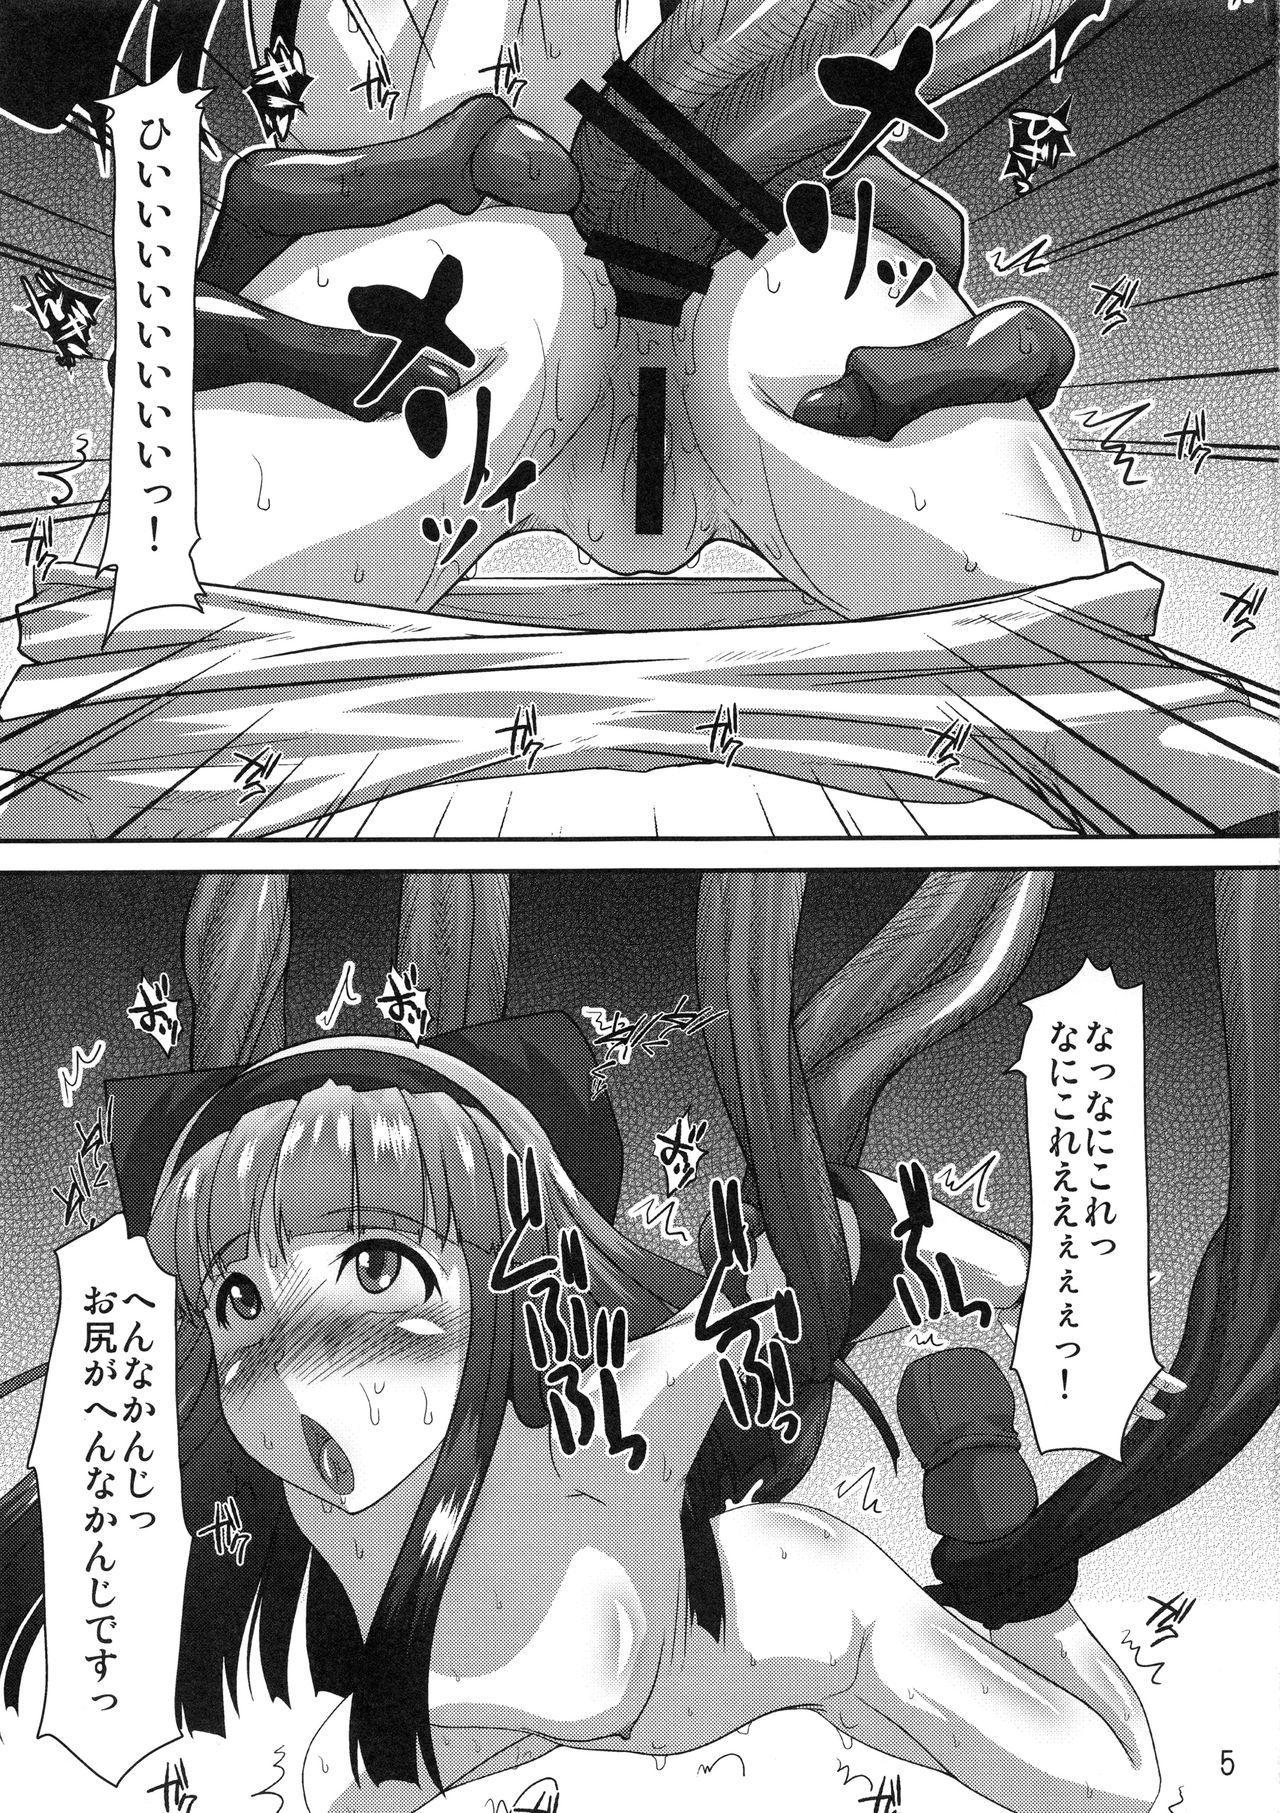 Foreplay Shokushu vs Nakoruru - Samurai spirits Blowjob - Page 4